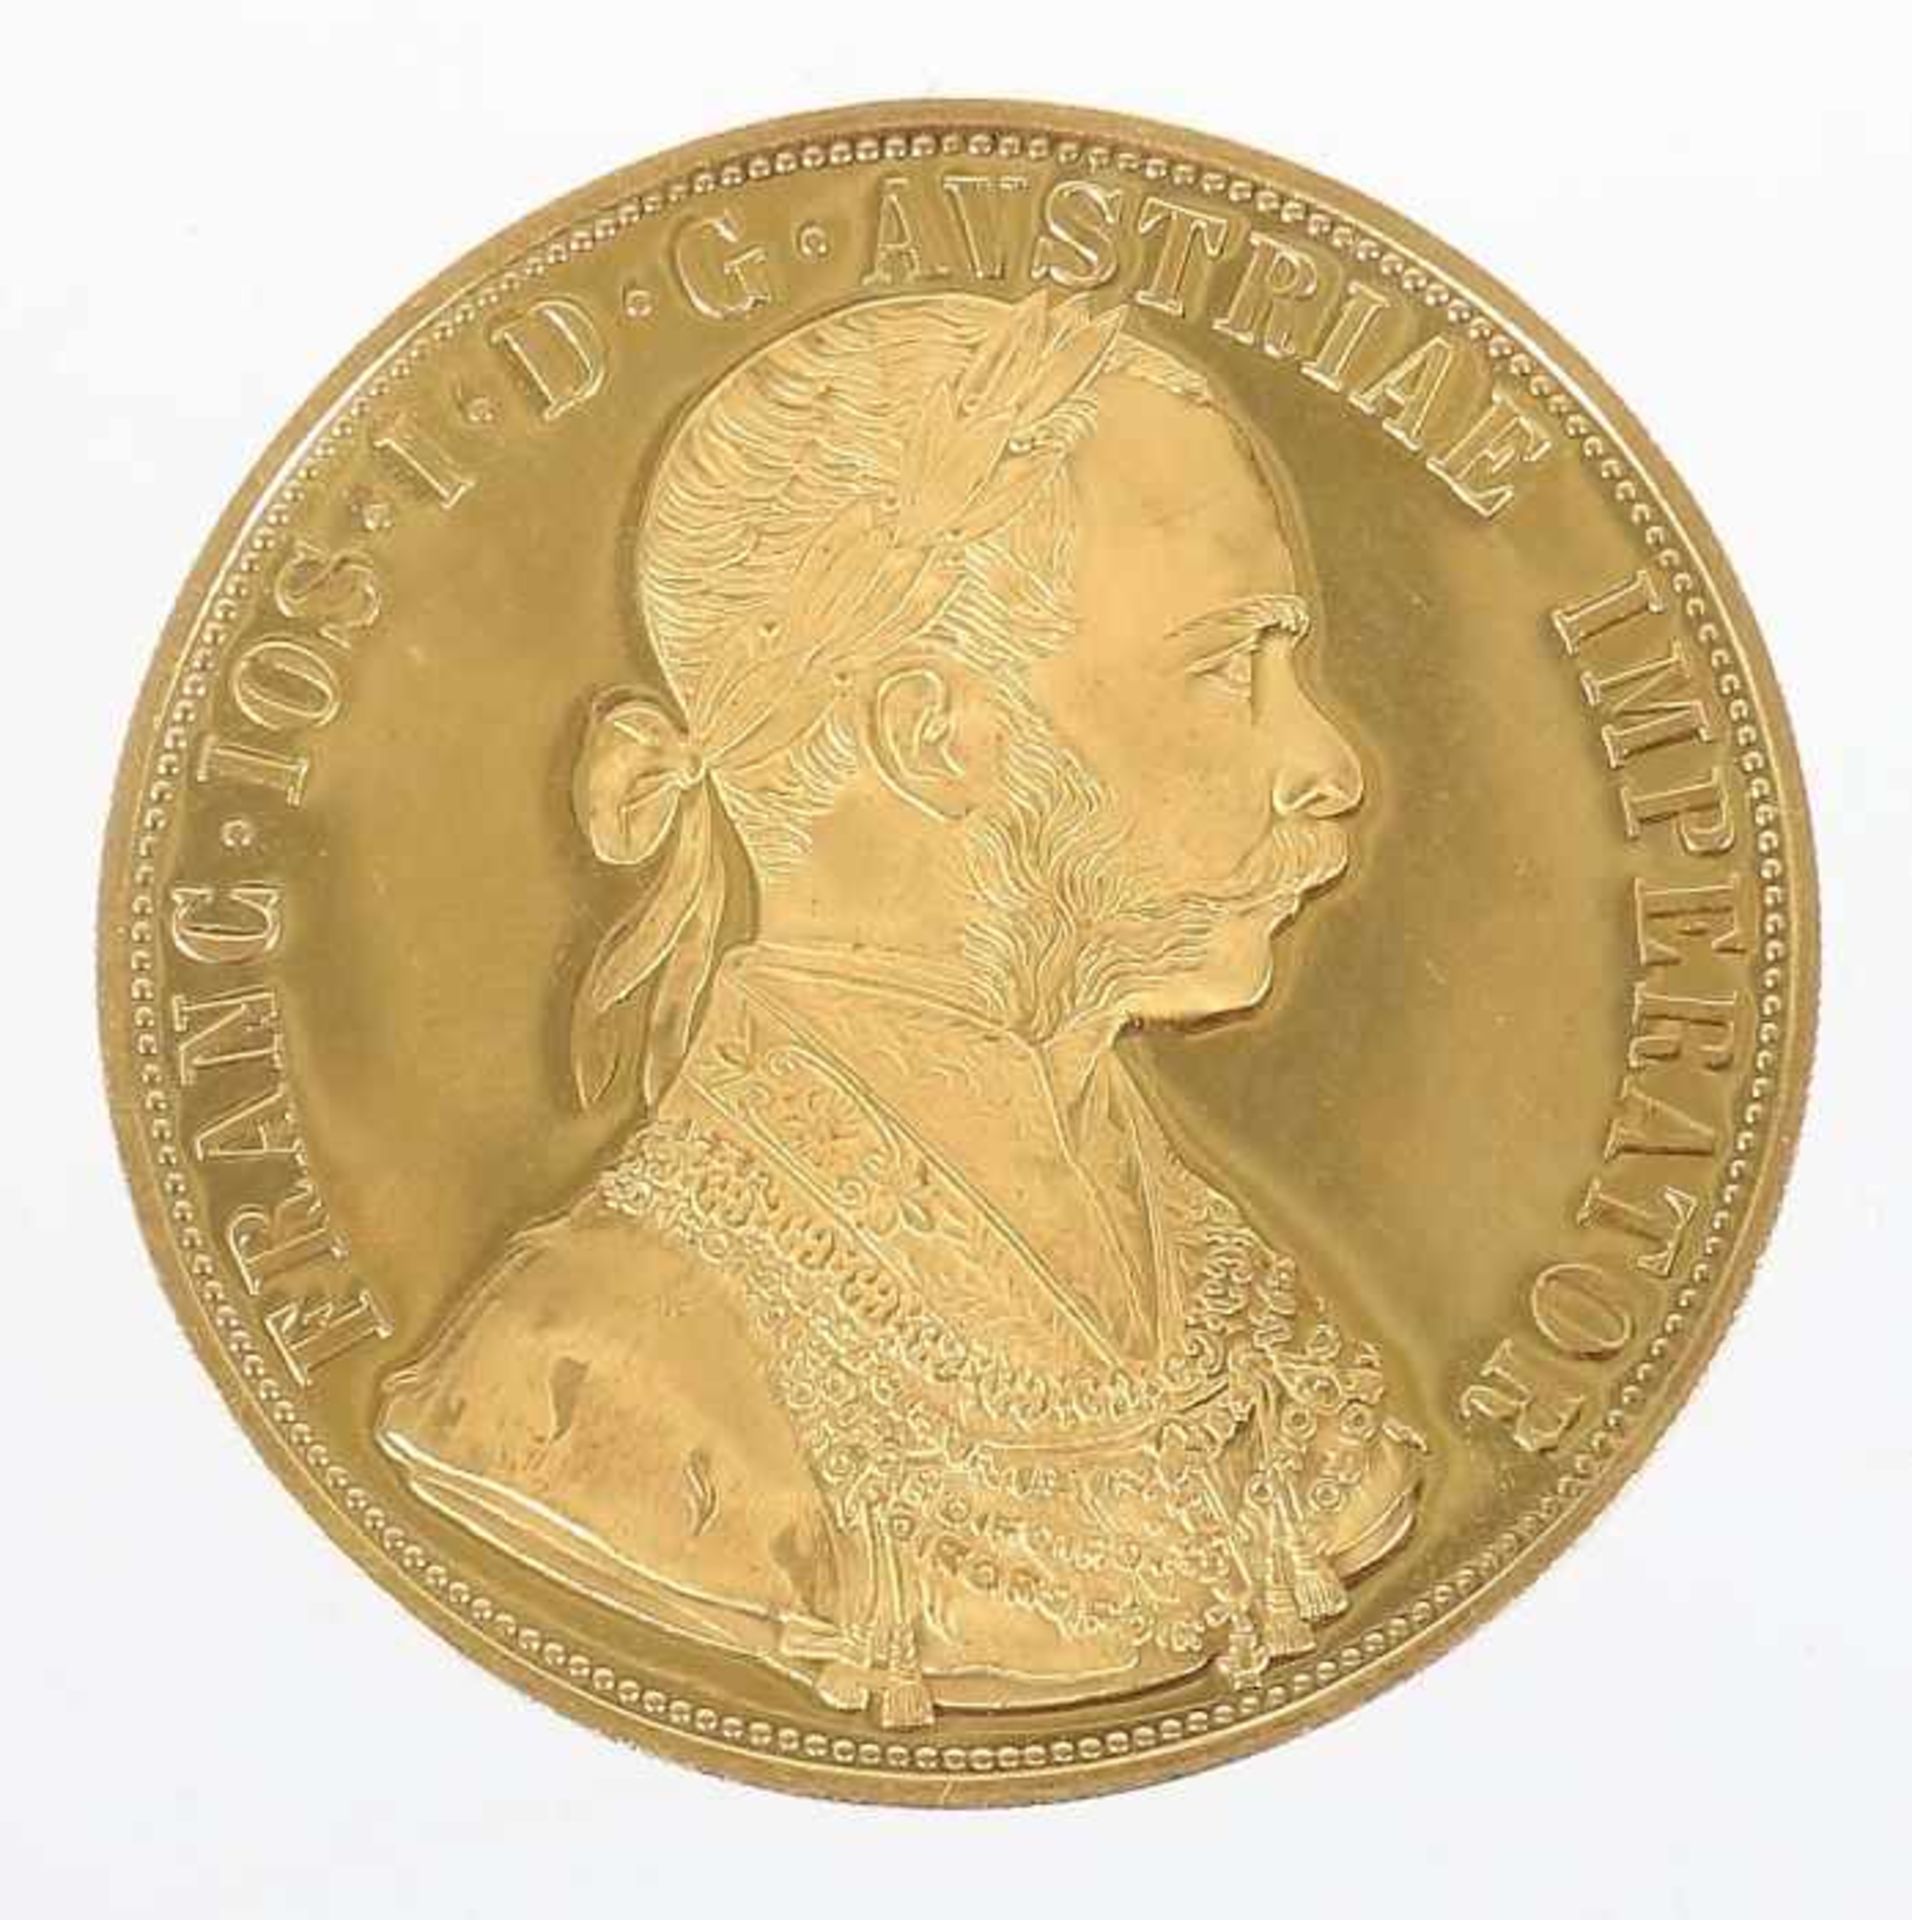 4 Dukaten-GoldmünzeÖsterreich, dat. 1915, Gold 986, ca. 13,95 g, averse mit Seitenprofil des Franz